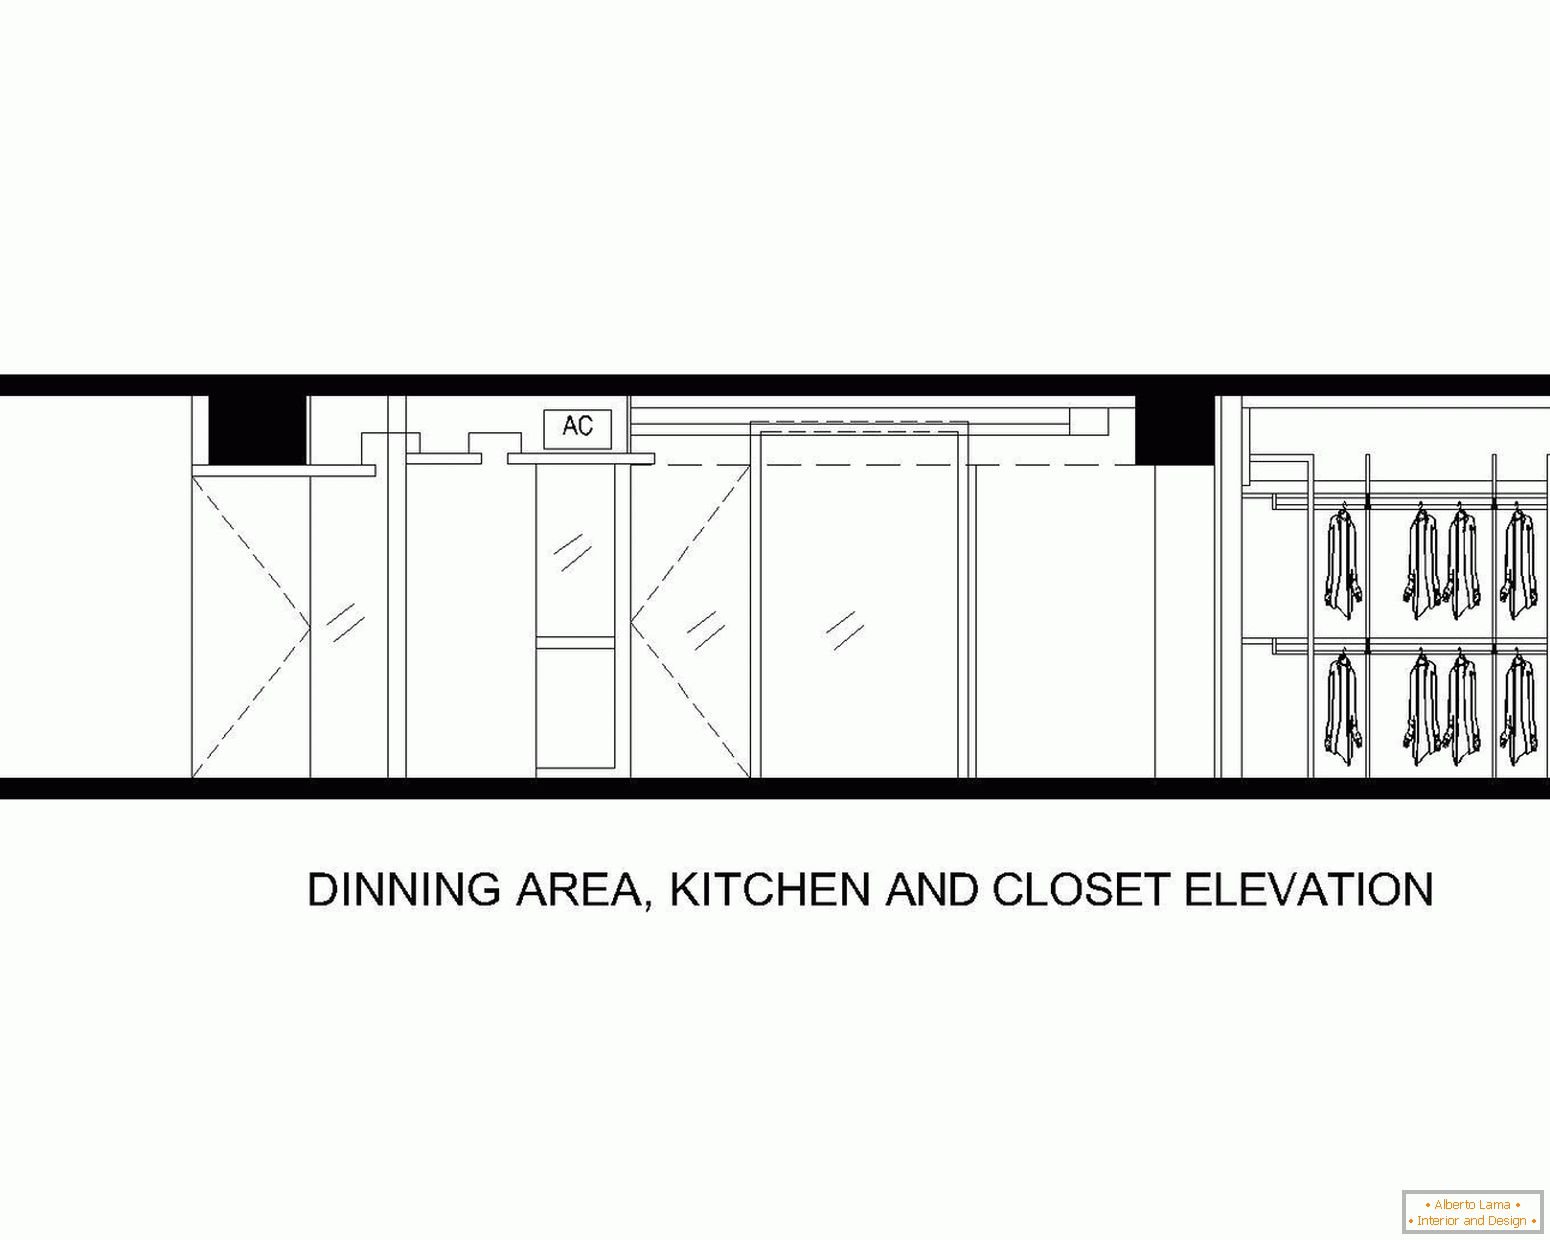 Postavitev jedilnega prostora, kuhinje in kopalnice